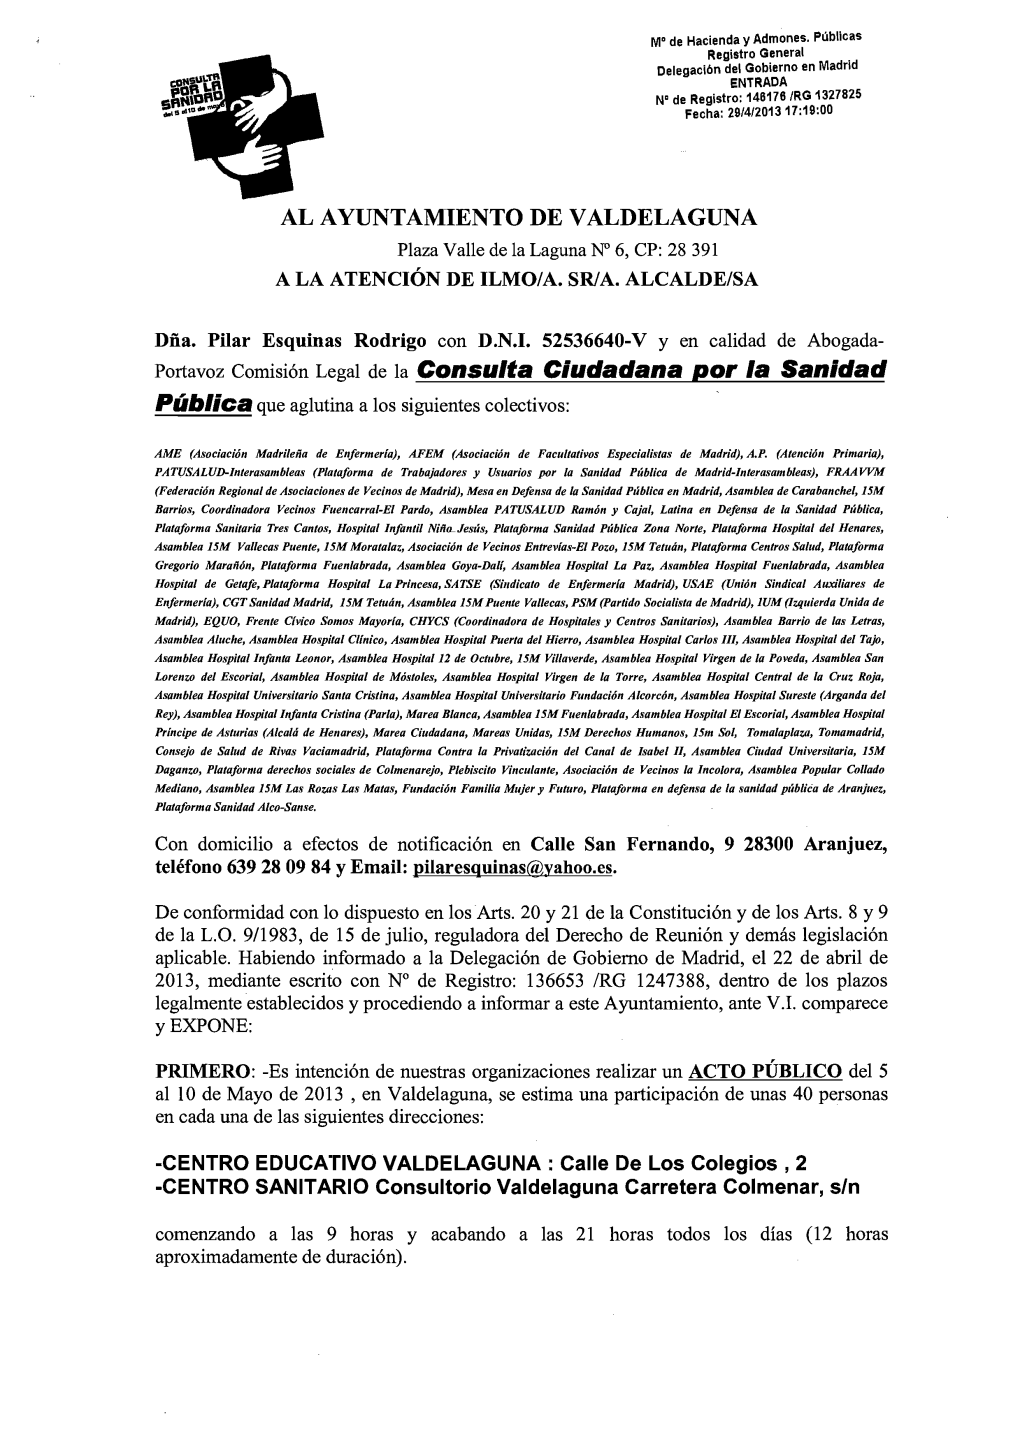 AL AYUNTAMIENTO DE VALDELAGUNA Portavoz Comisión Legal De La Consulta Ciudadana Por La Sanidad